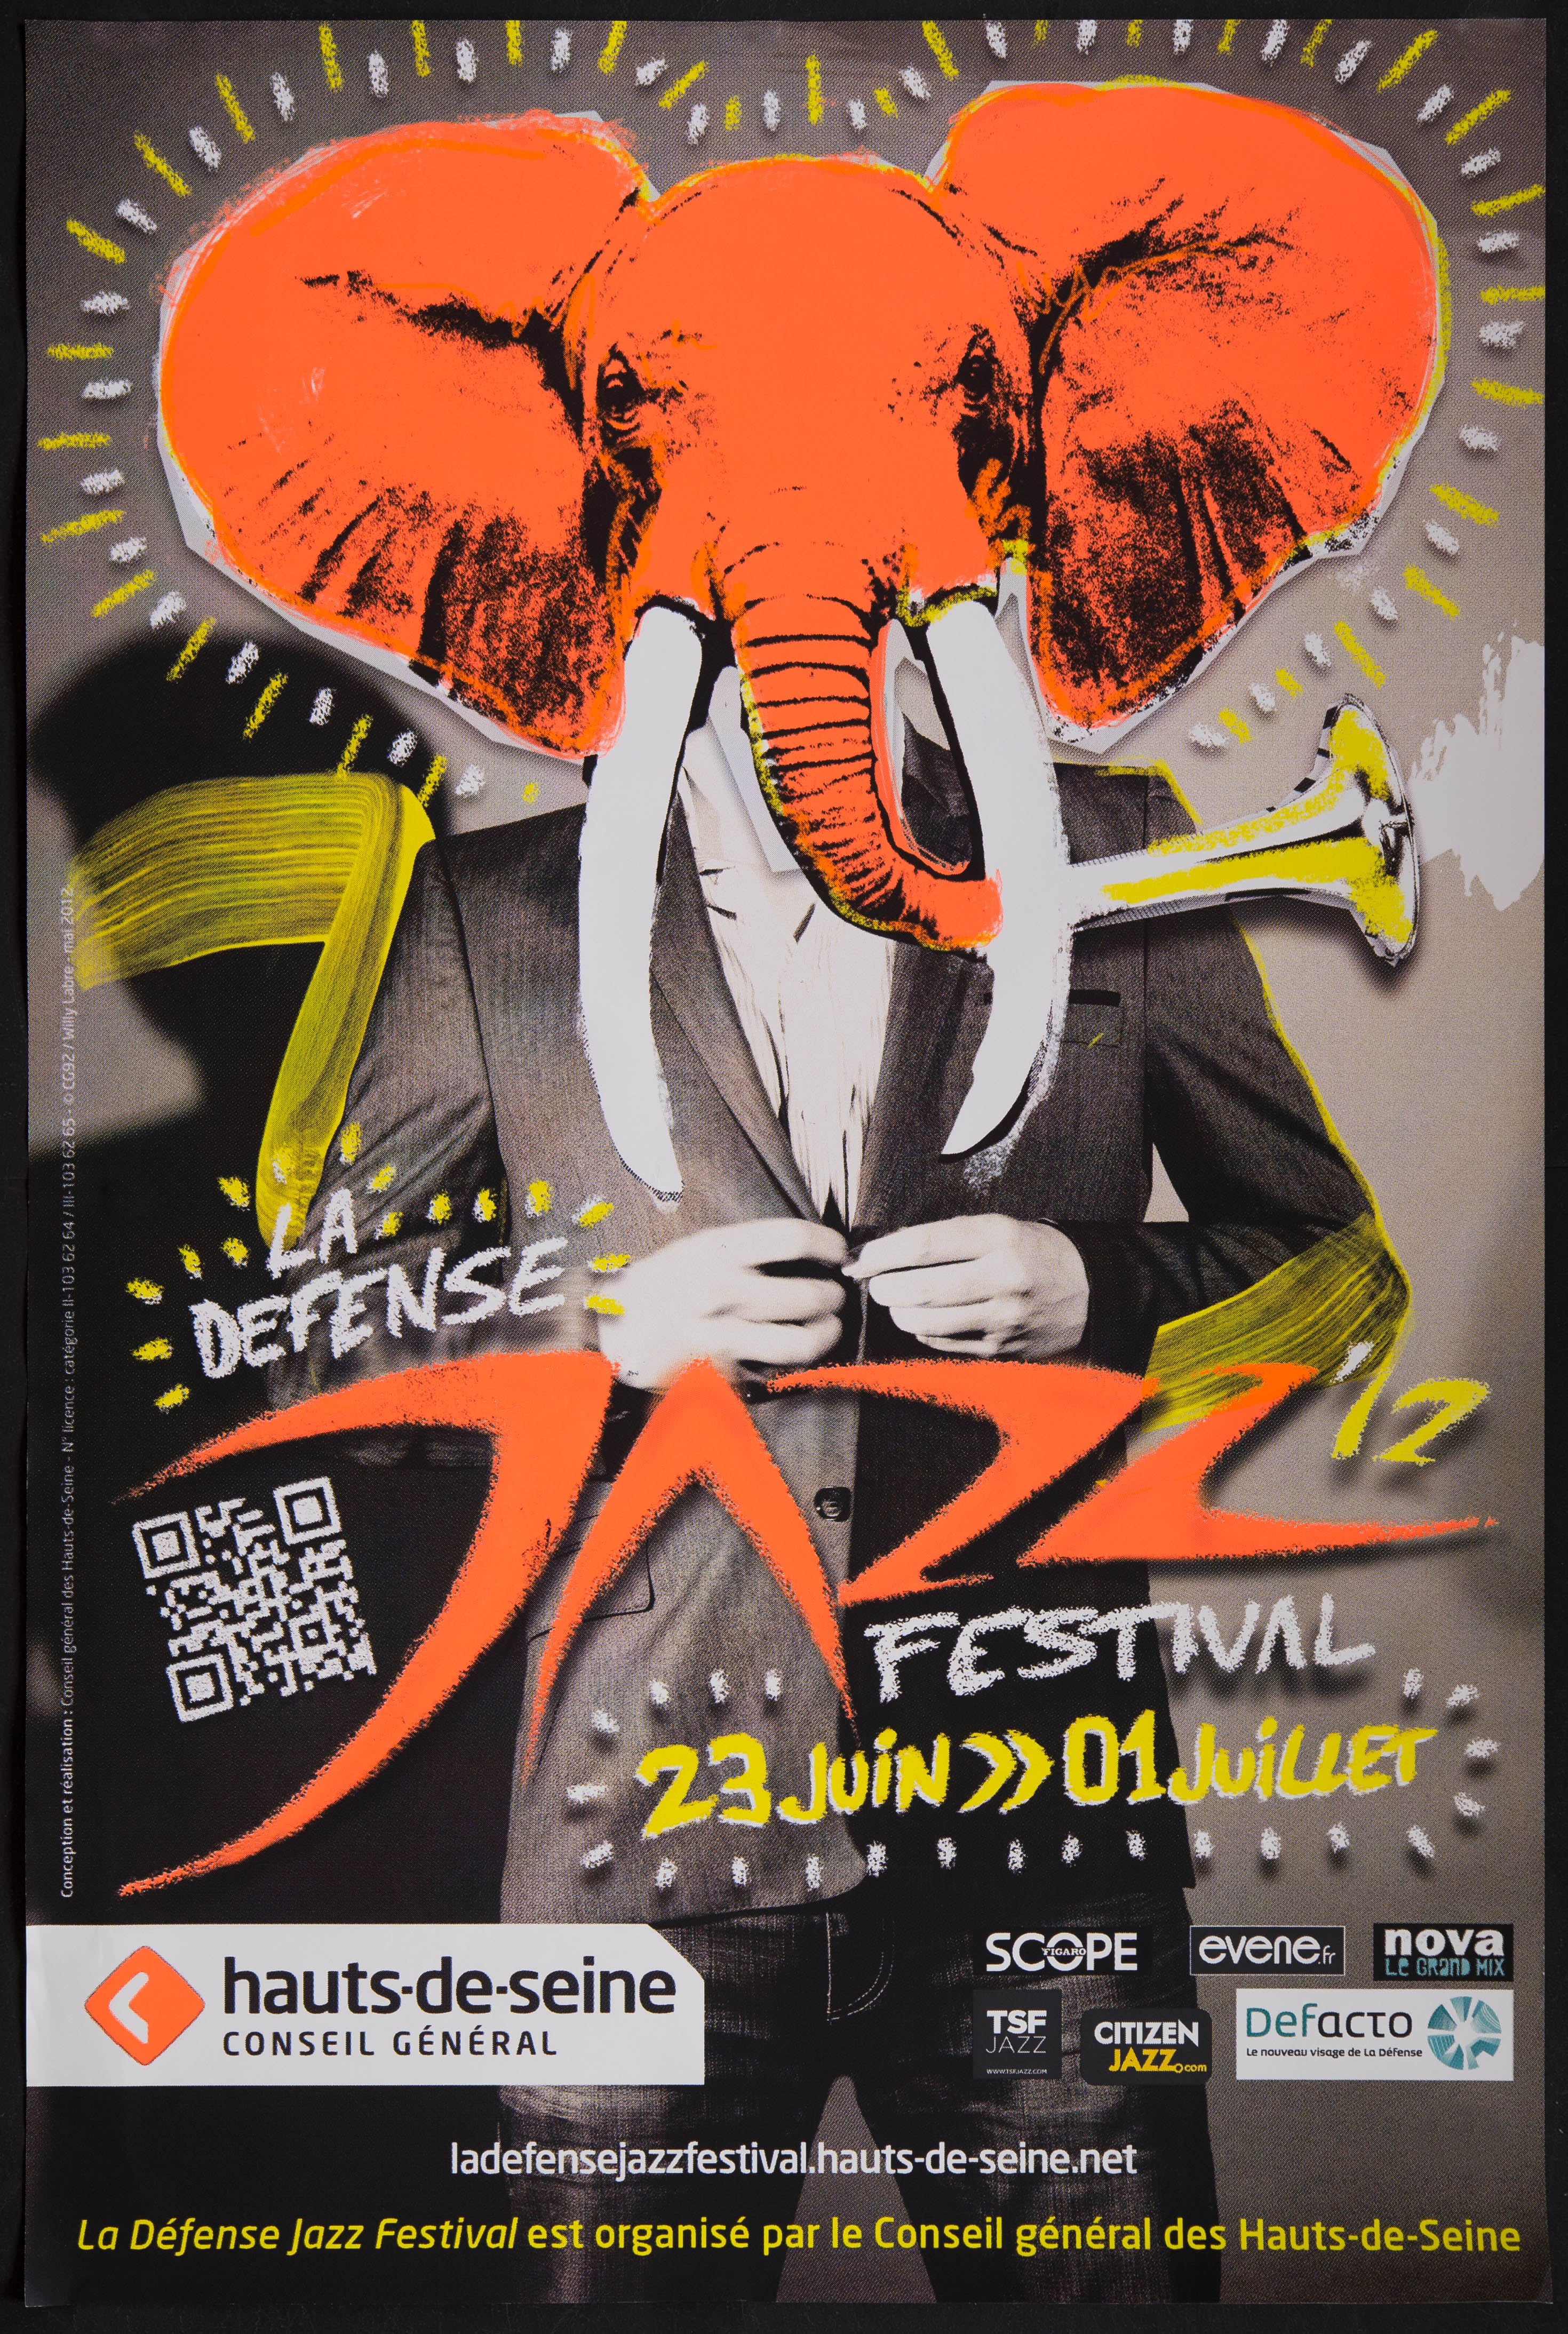 La Défense Jazz'12 festival. 23 juin-1er juillet... La Défense Jazz festival est organisé par le conseil général des Hauts-de-Seine /Willy Labre. - CG 92, 2012. - 1 affiche ill. coul., 120 x 80 cm.